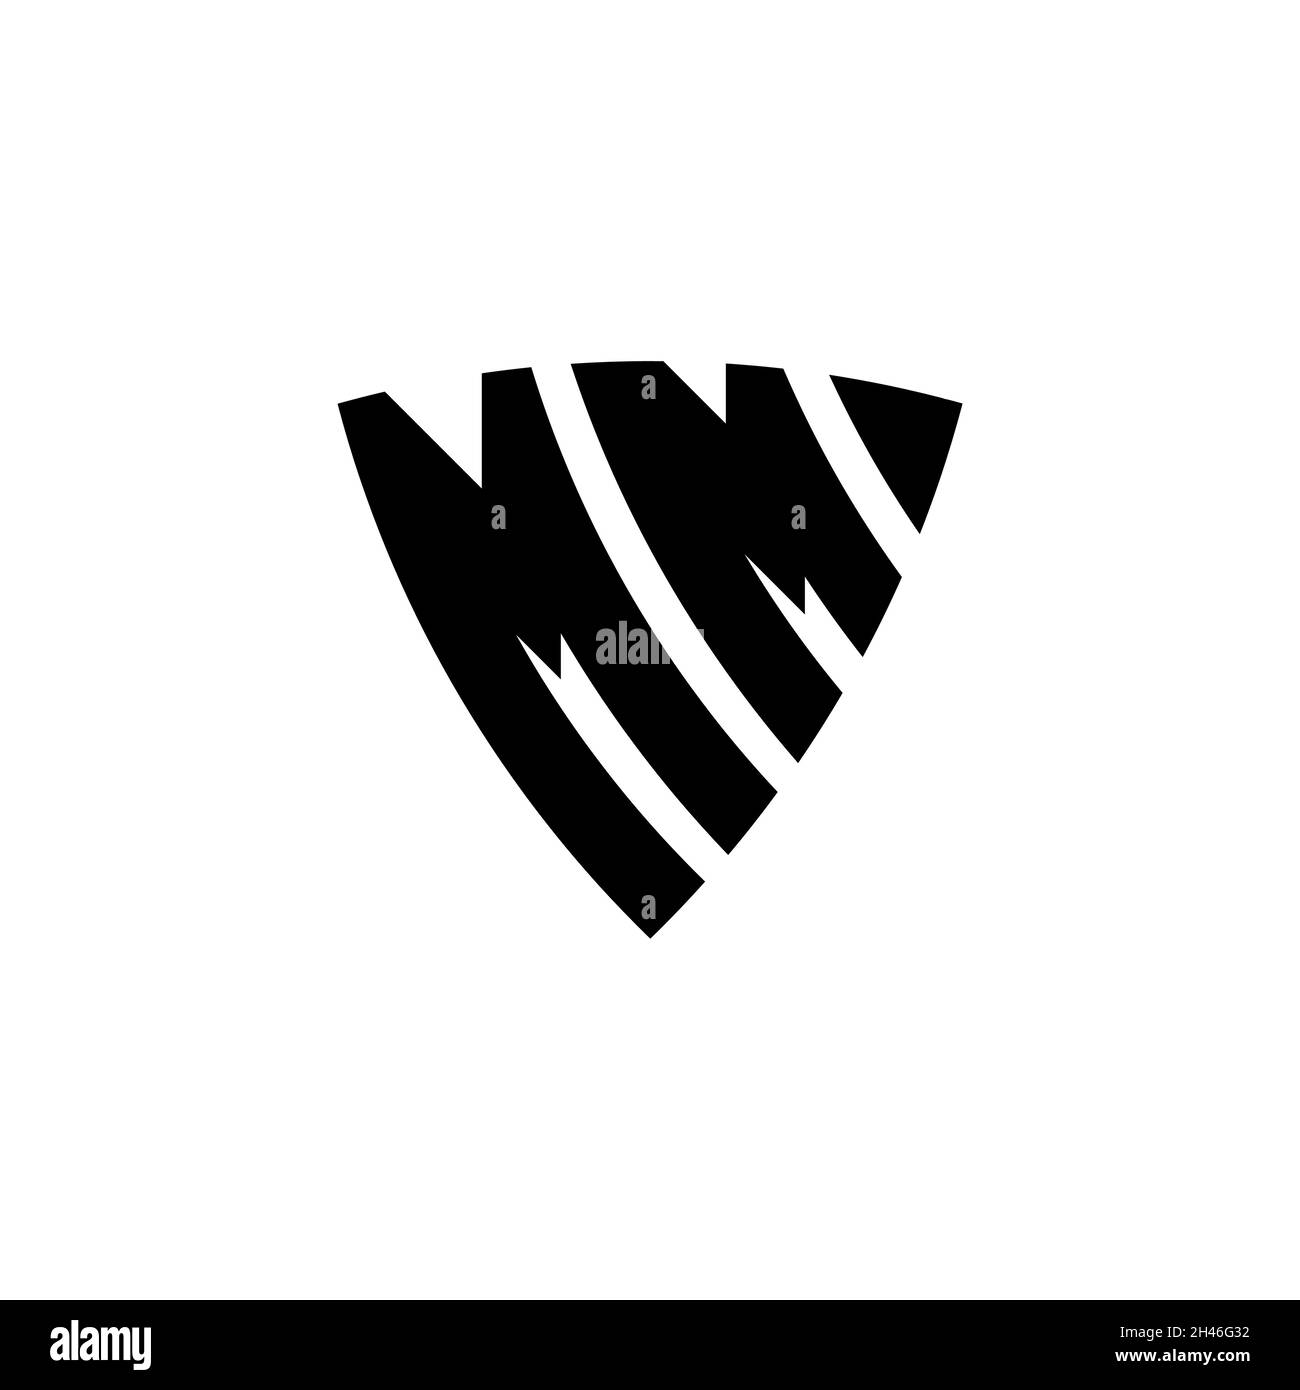 Mm logo monogram with emblem shield shape design Vector Image